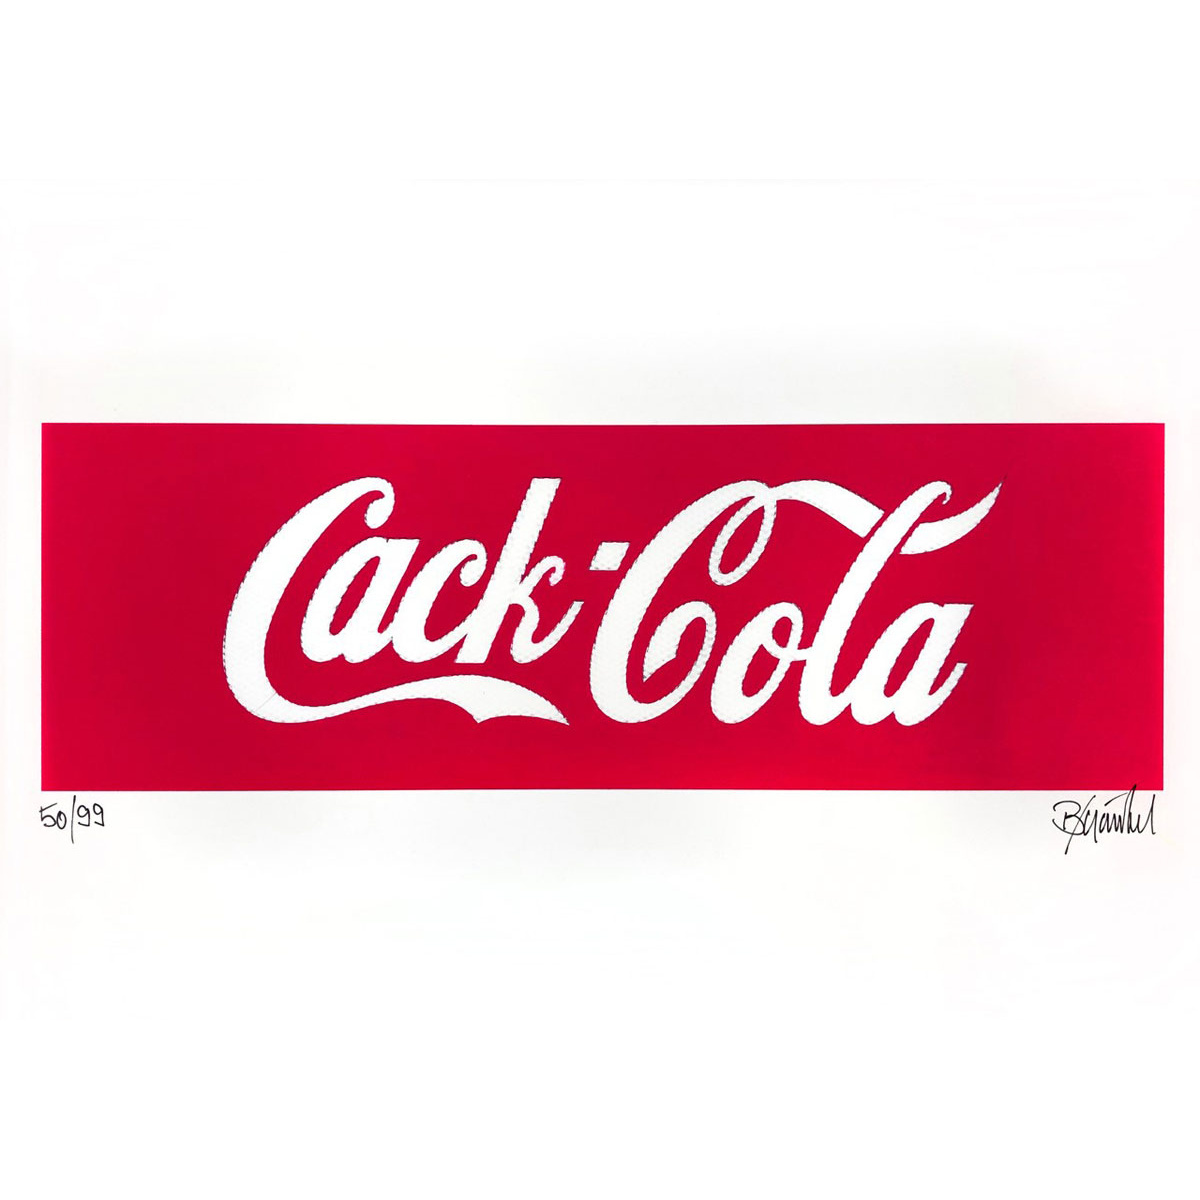 Cack Cola von Thomas Baumgärtel